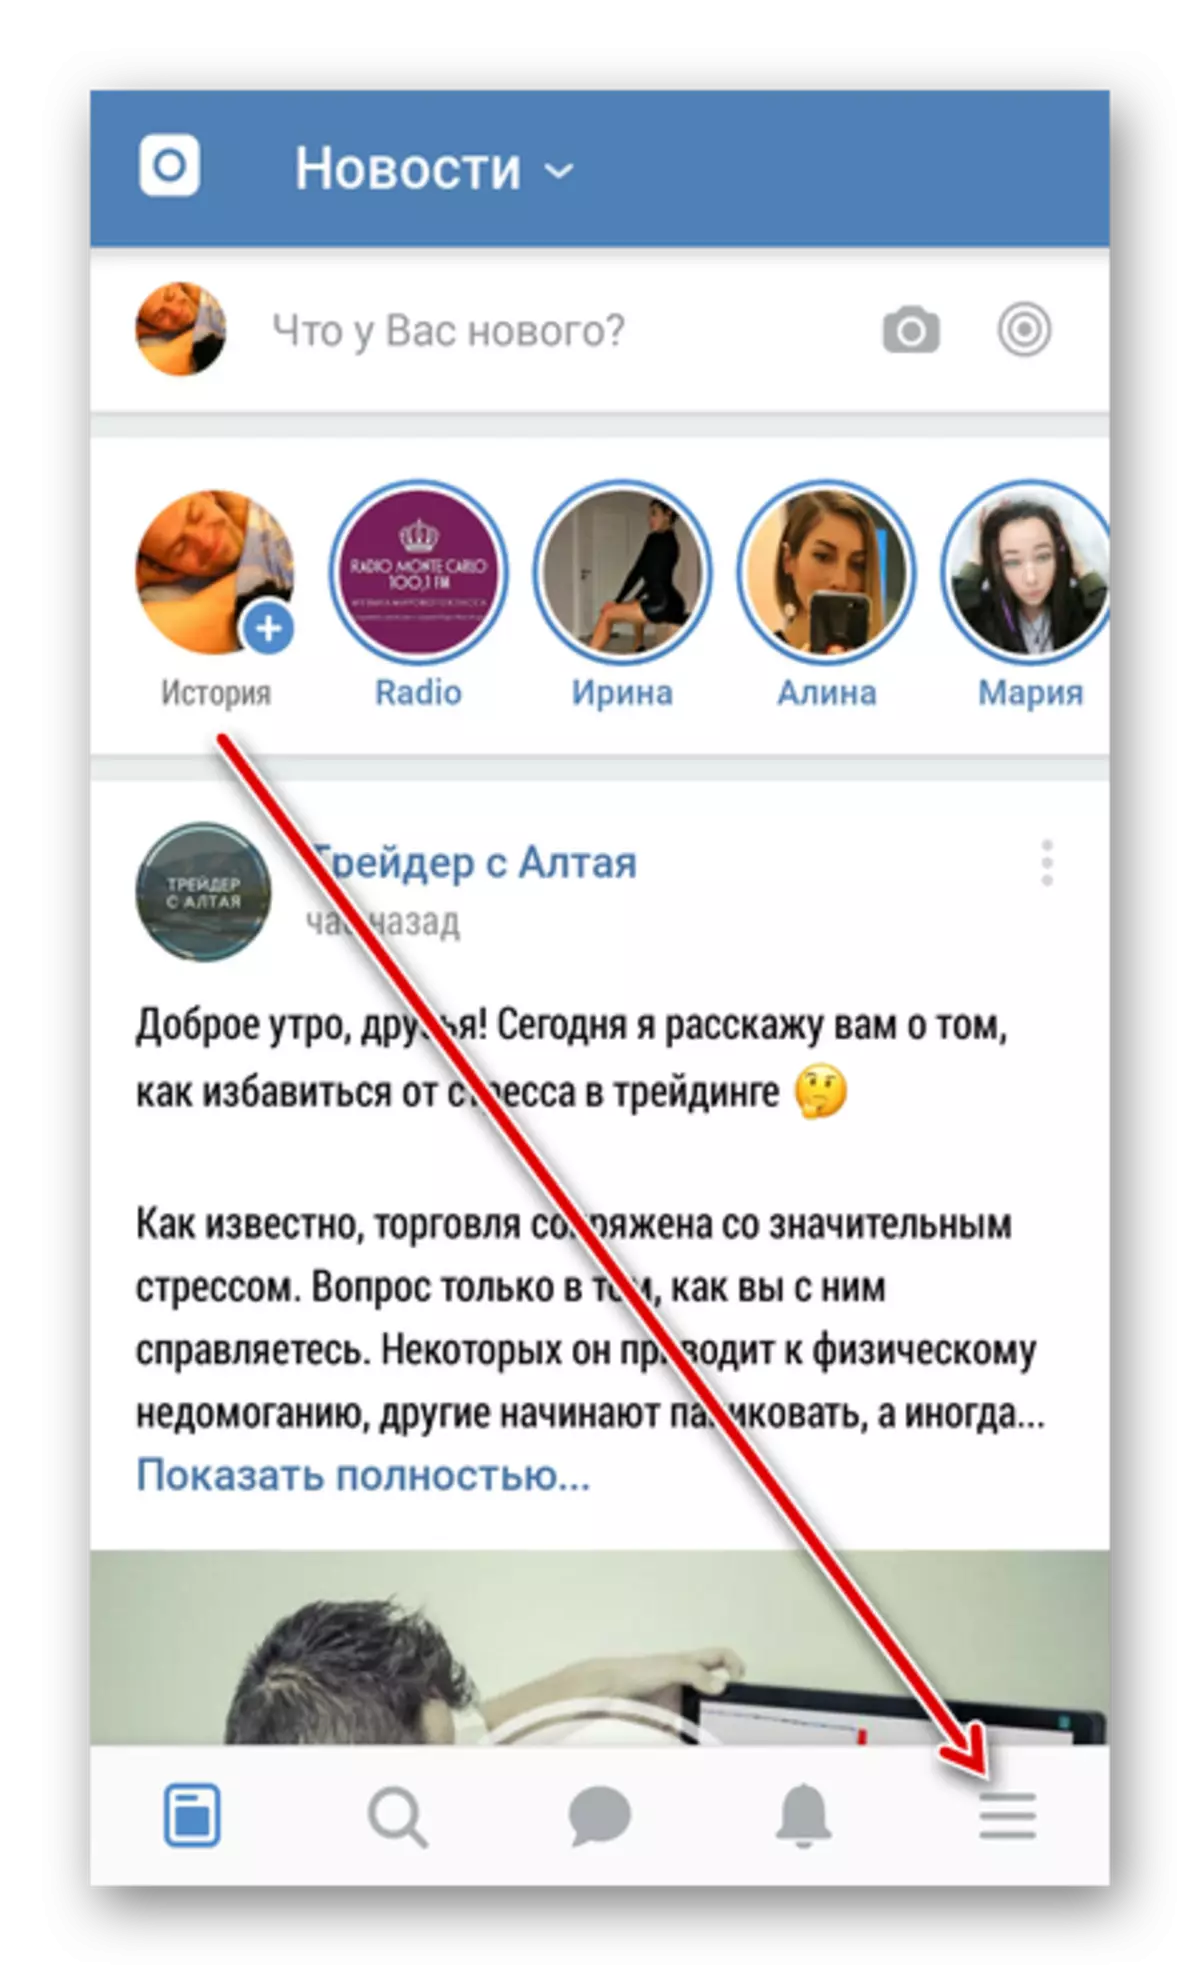 به برنامه Vkontakte وارد شوید